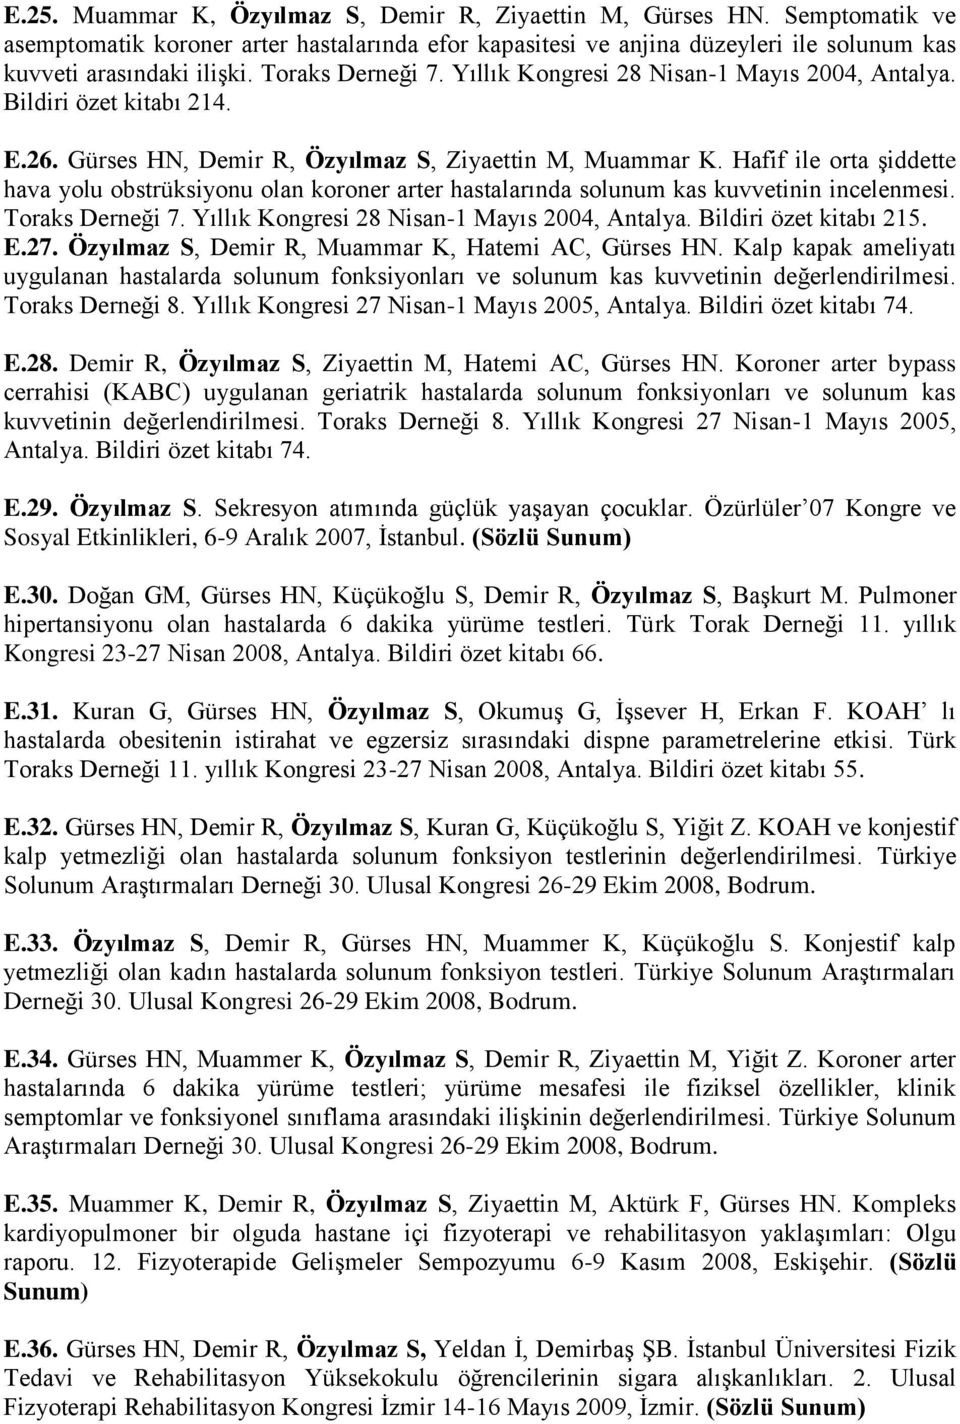 Hafif ile orta şiddette hava yolu obstrüksiyonu olan koroner arter hastalarında solunum kas kuvvetinin incelenmesi. Toraks Derneği 7. Yıllık Kongresi 28 Nisan-1 Mayıs 2004, Antalya.